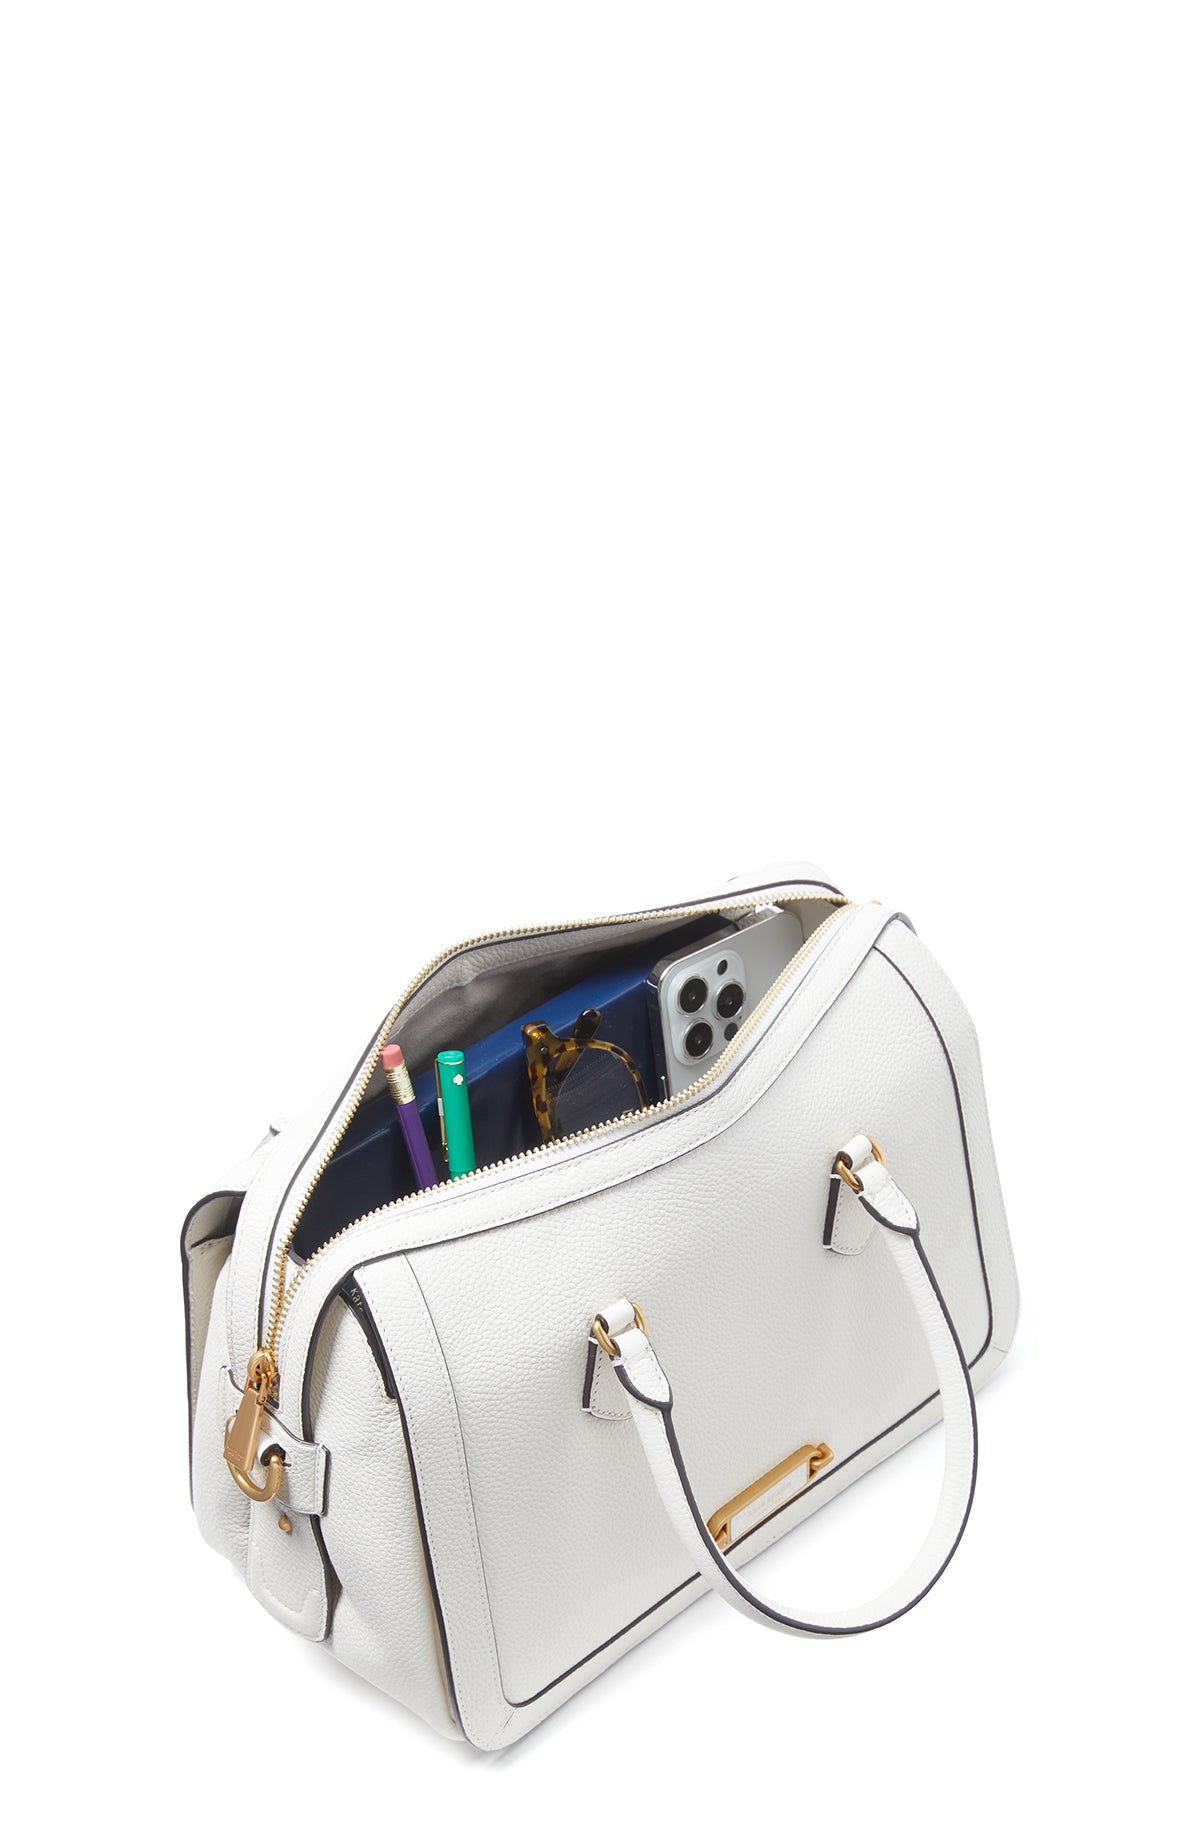 K9914-gramercy medium satchel-Halo White